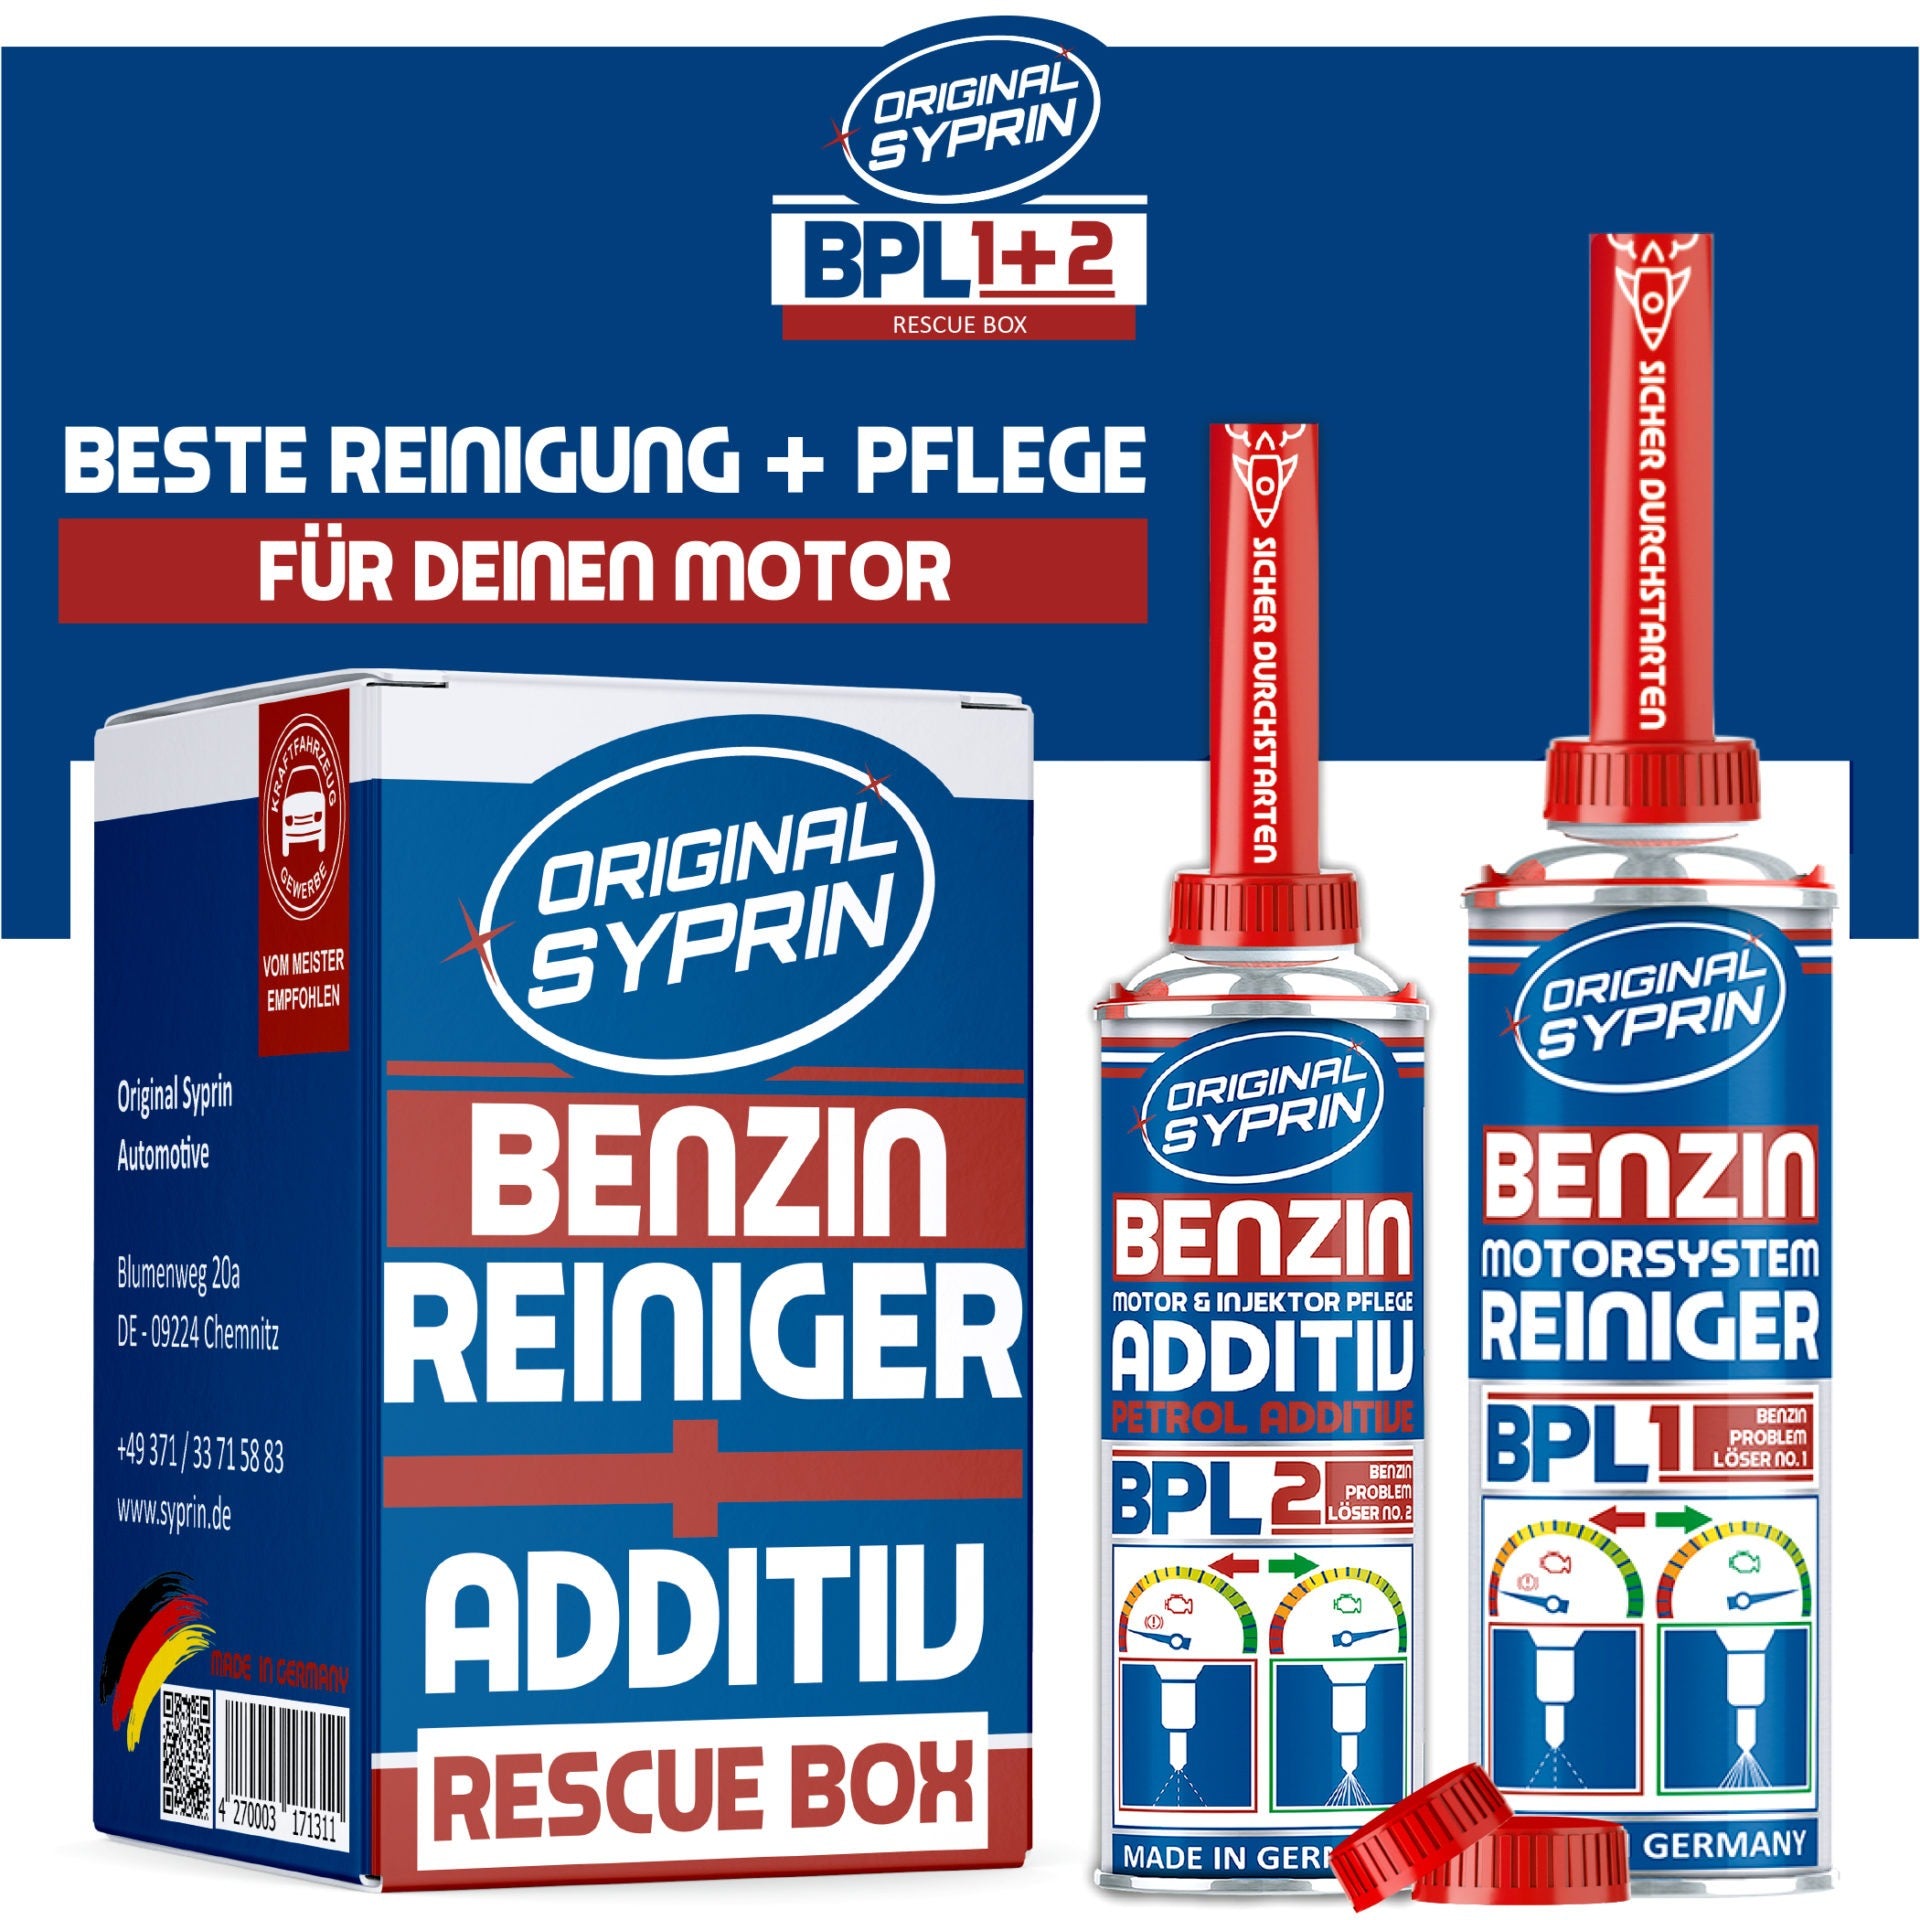 ORIGINAL SYPRIN Benzin Rescue Box - Reiniger und Additiv - 500ml + 2